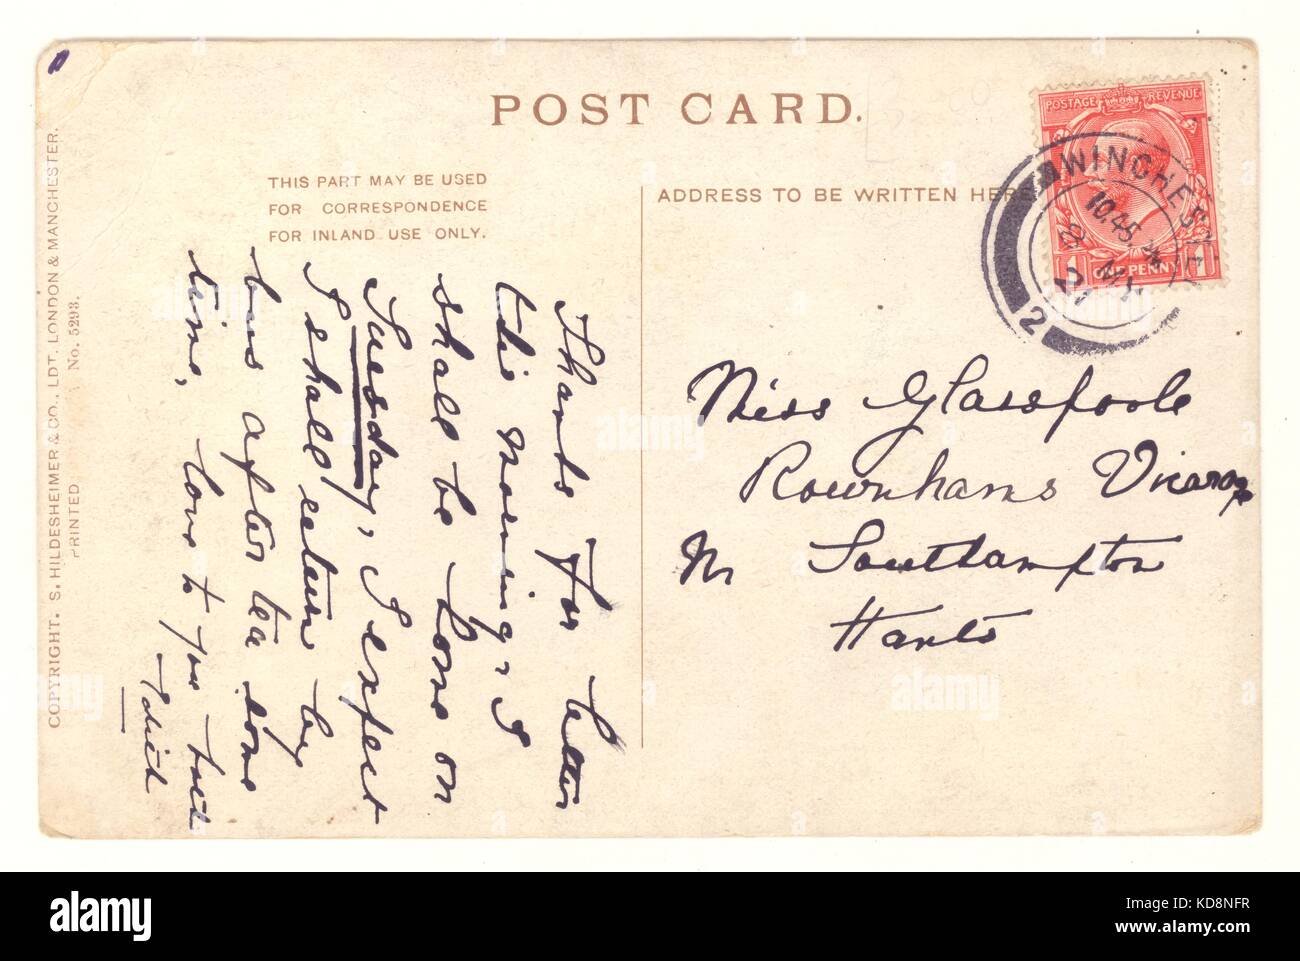 El reverso de una tarjeta postal, el matasellos de 1921 Foto de stock